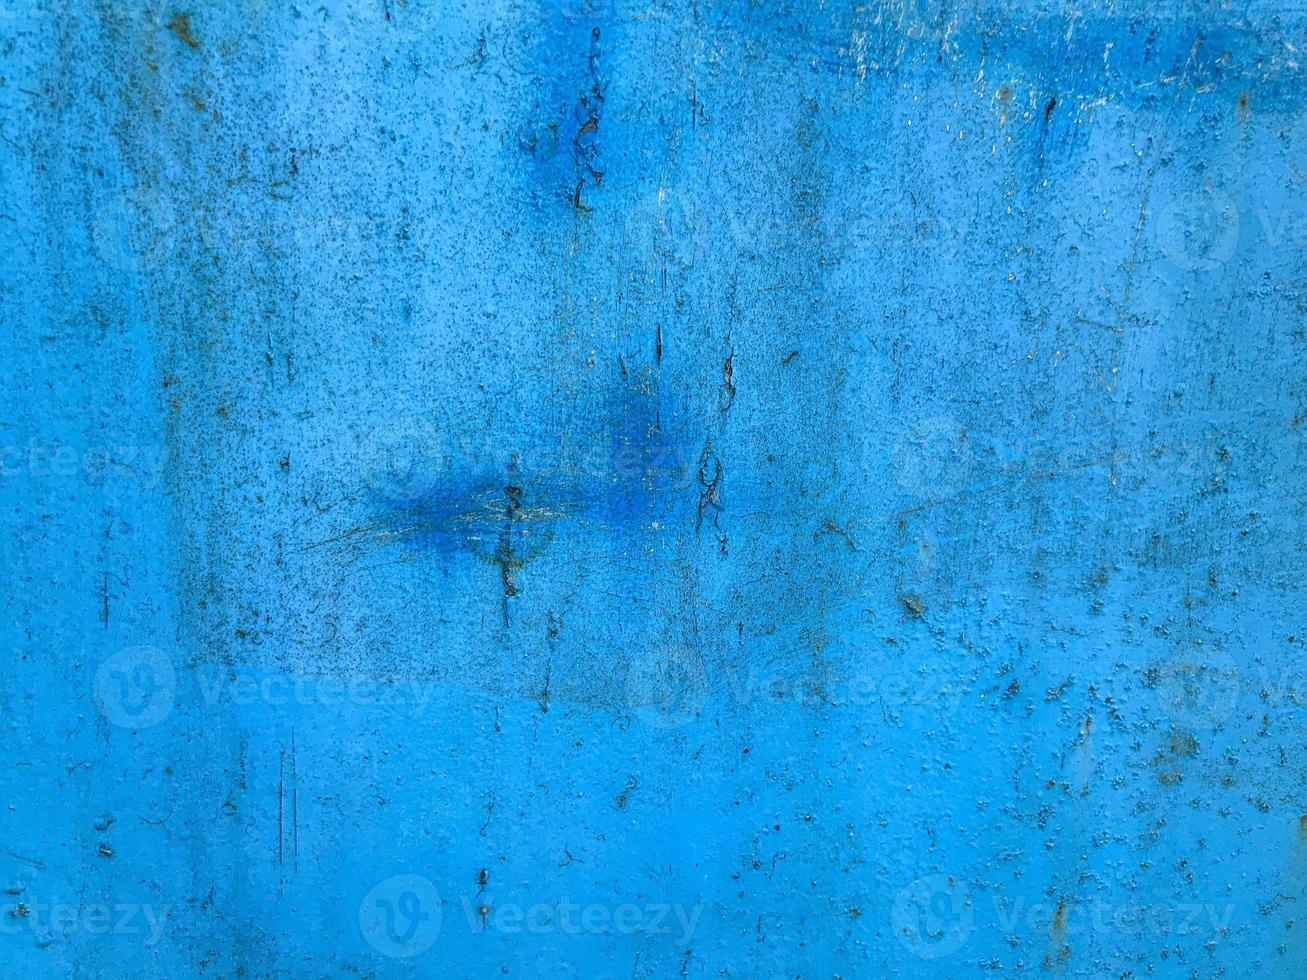 Textur, blaue Farbe. Rost, Beschädigungen am Blech. Hausabdeckung, Bänke. blau lackierte Metalloberfläche. Schrammen eines Blechs, Schnitte. stilvolles Oberflächendesign foto